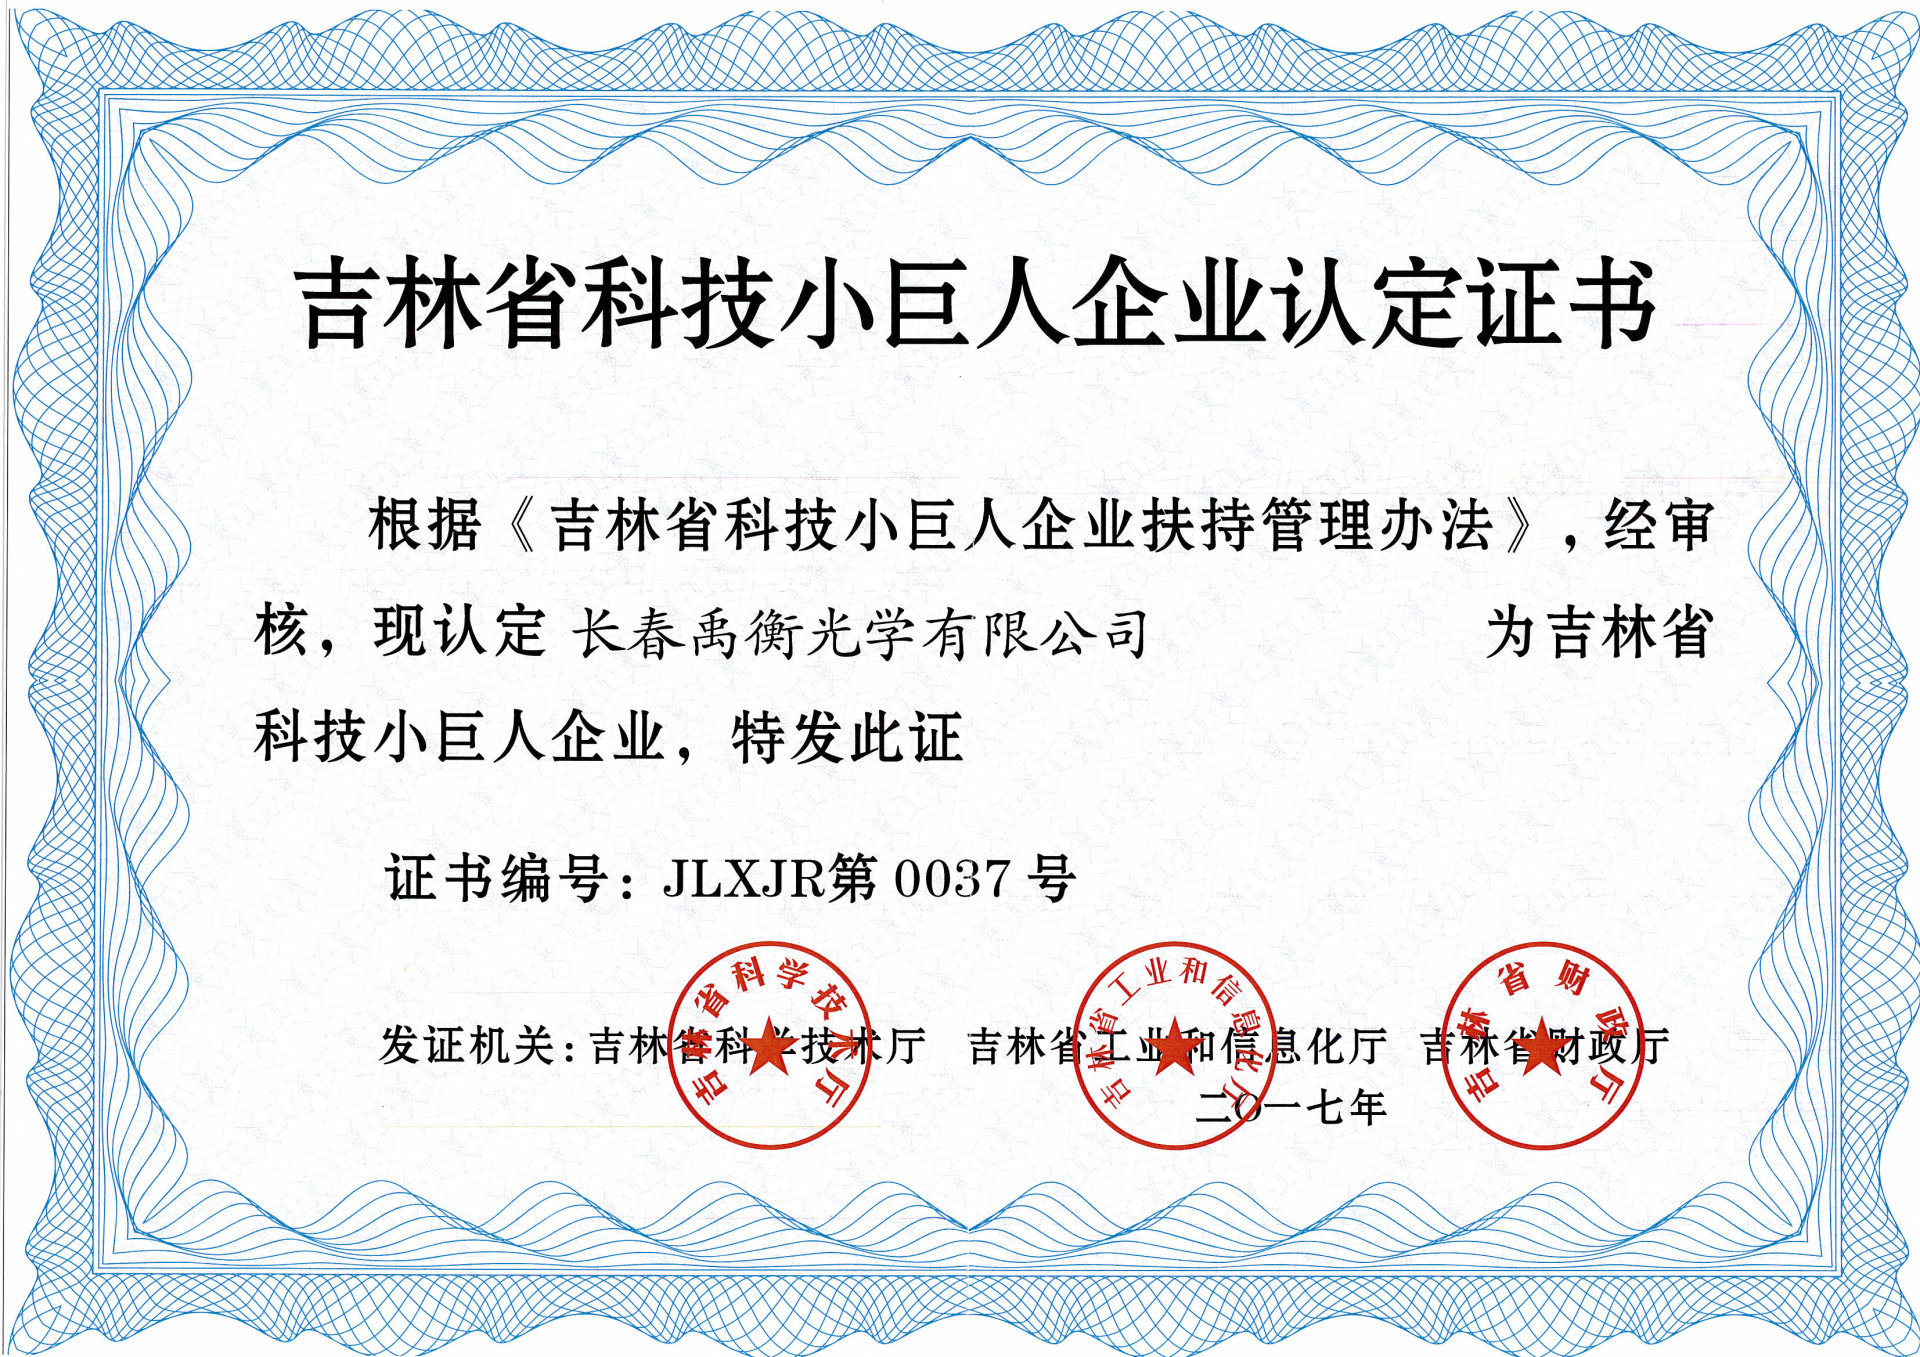 2017 Сертификат «Маленький гигант» в области науки и техники провинции Цзилинь